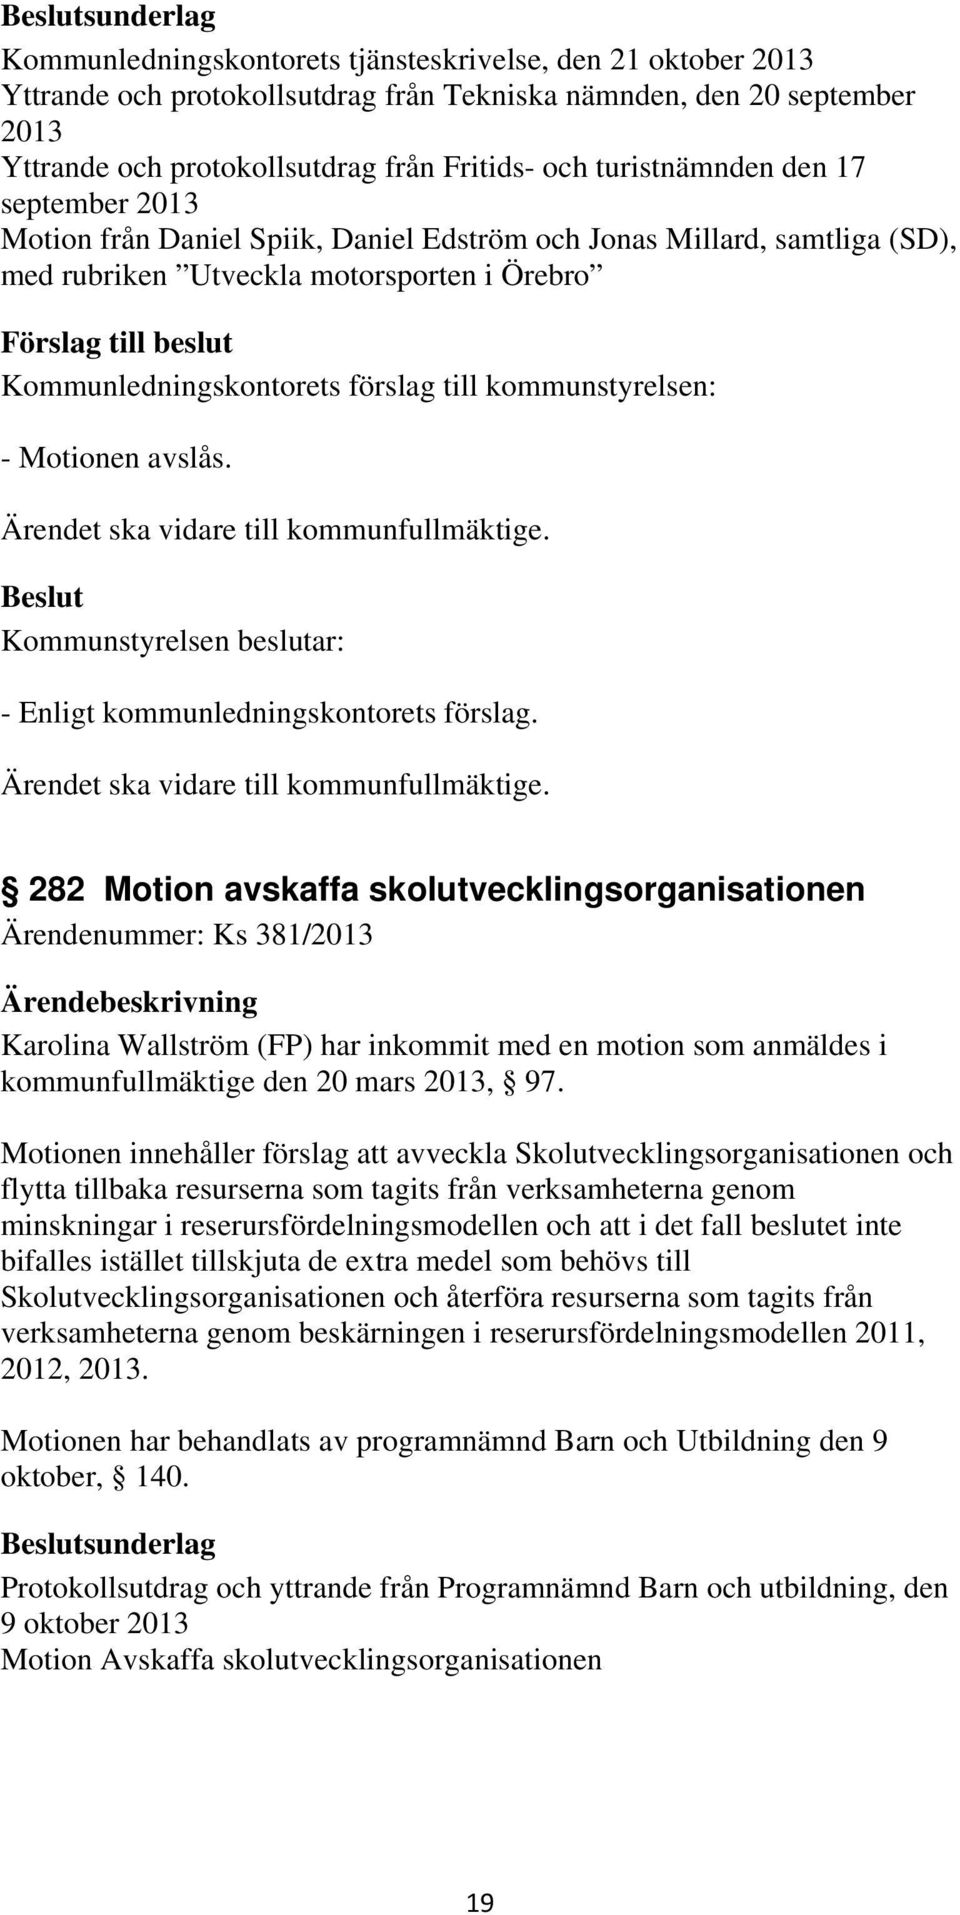 282 Motion avskaffa skolutvecklingsorganisationen Ärendenummer: Ks 381/2013 Karolina Wallström (FP) har inkommit med en motion som anmäldes i kommunfullmäktige den 20 mars 2013, 97.